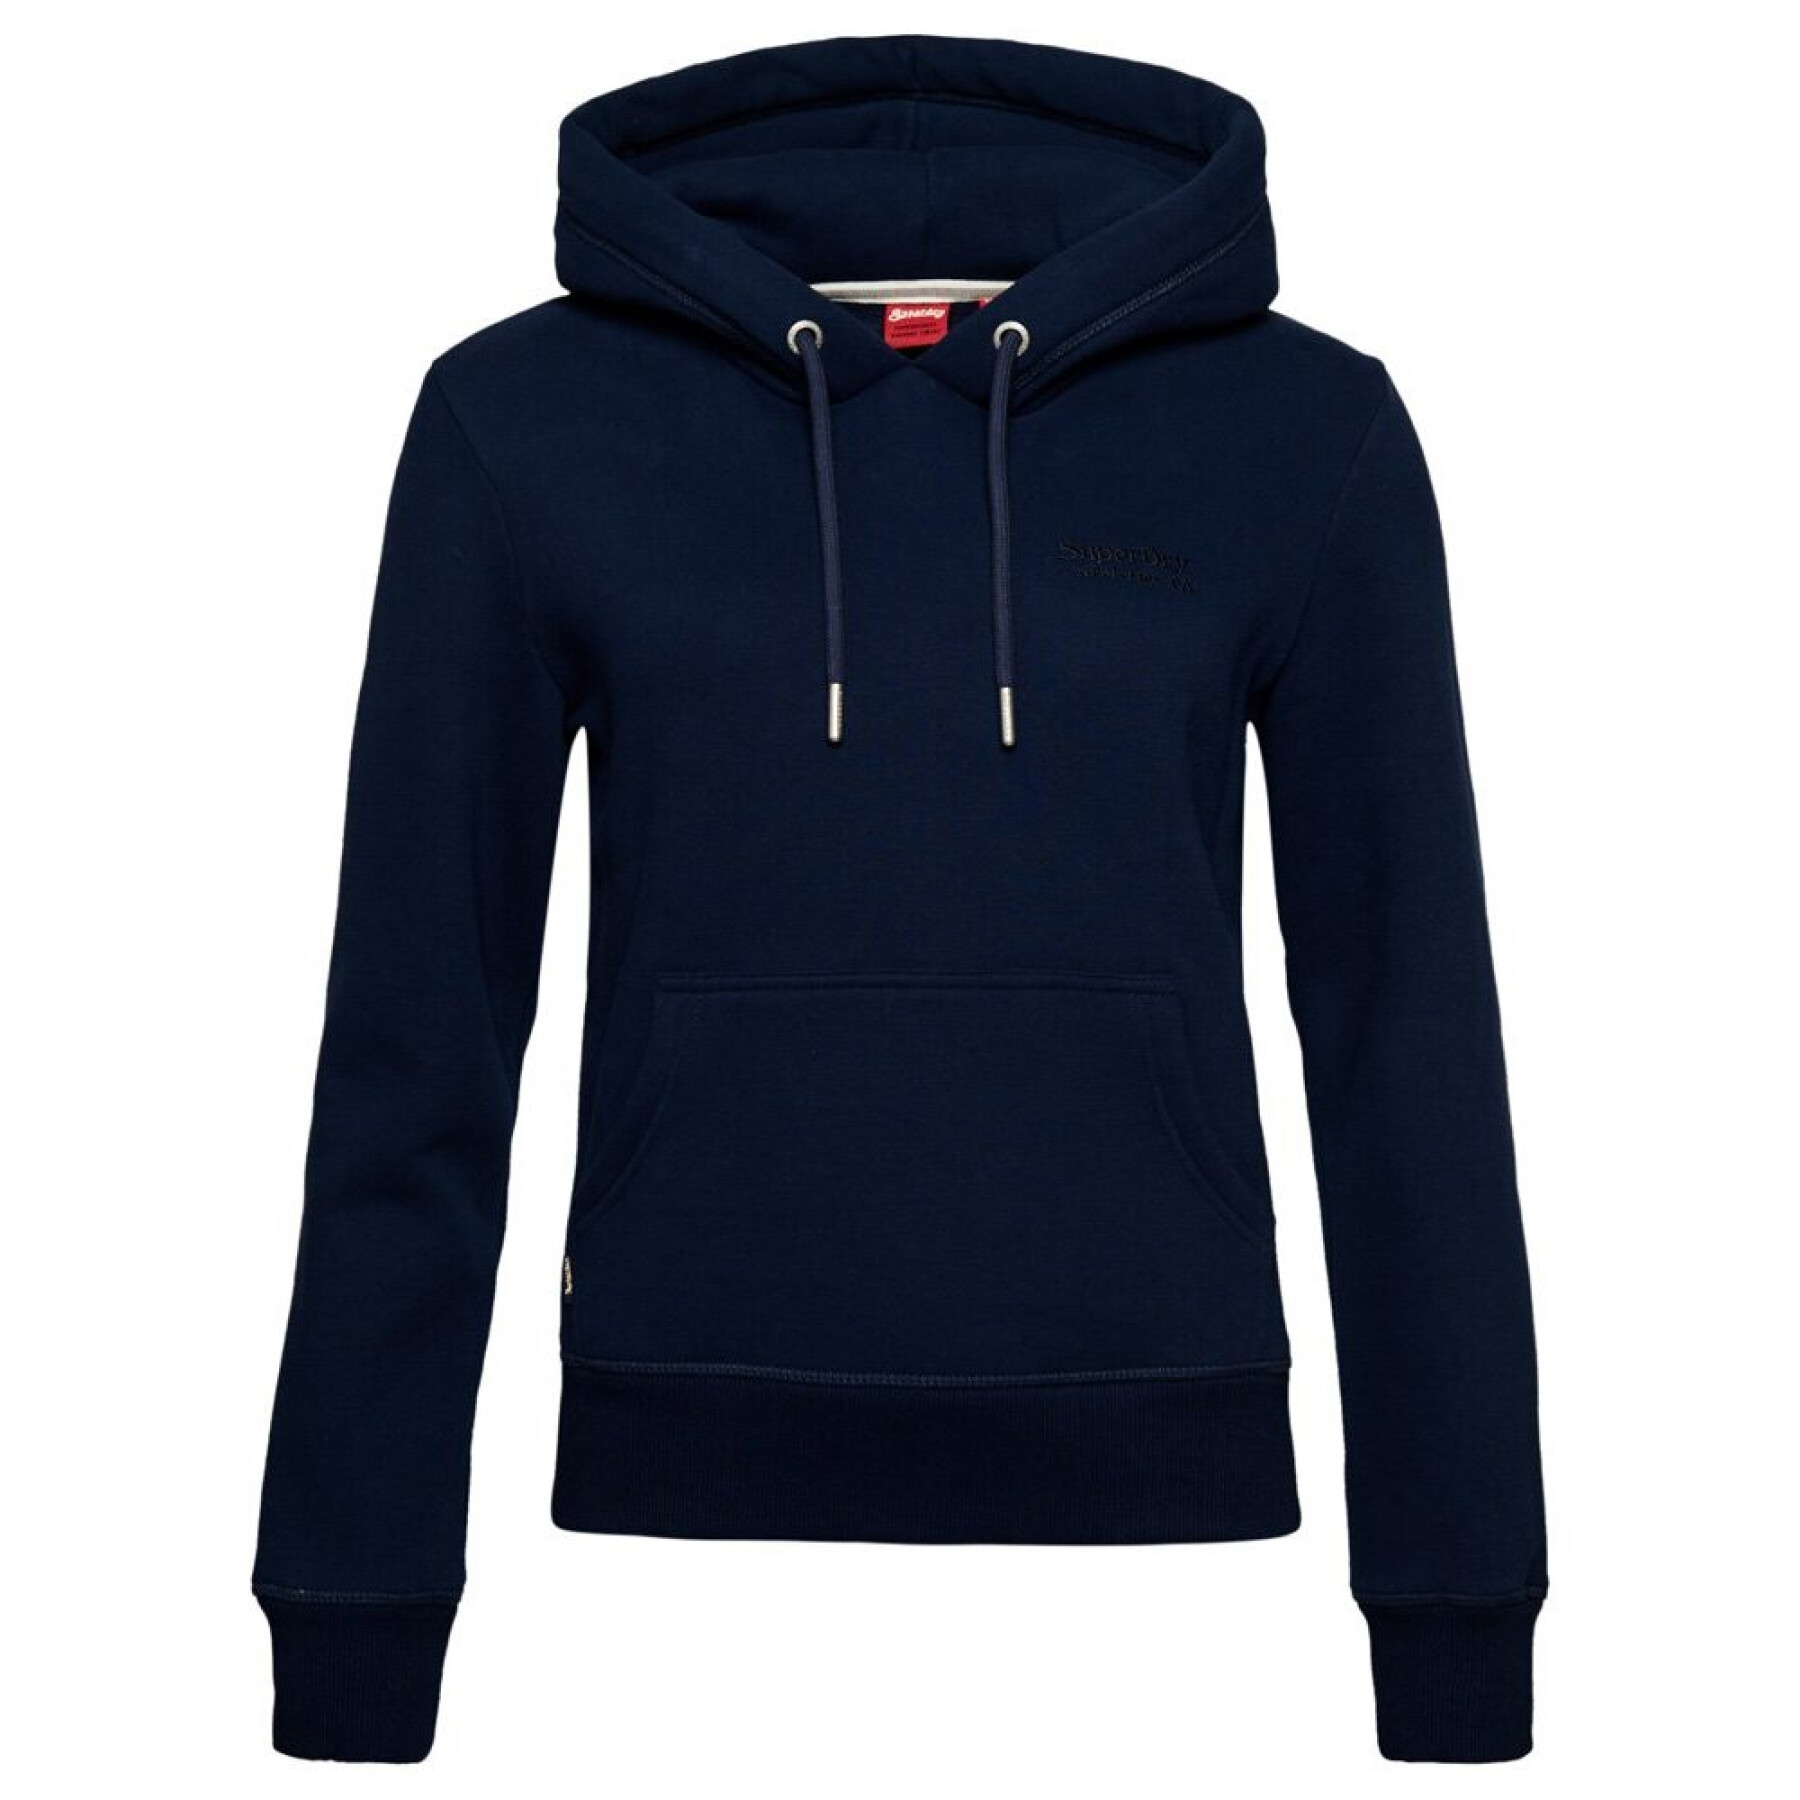 Women's hooded sweatshirt Superdry Essential